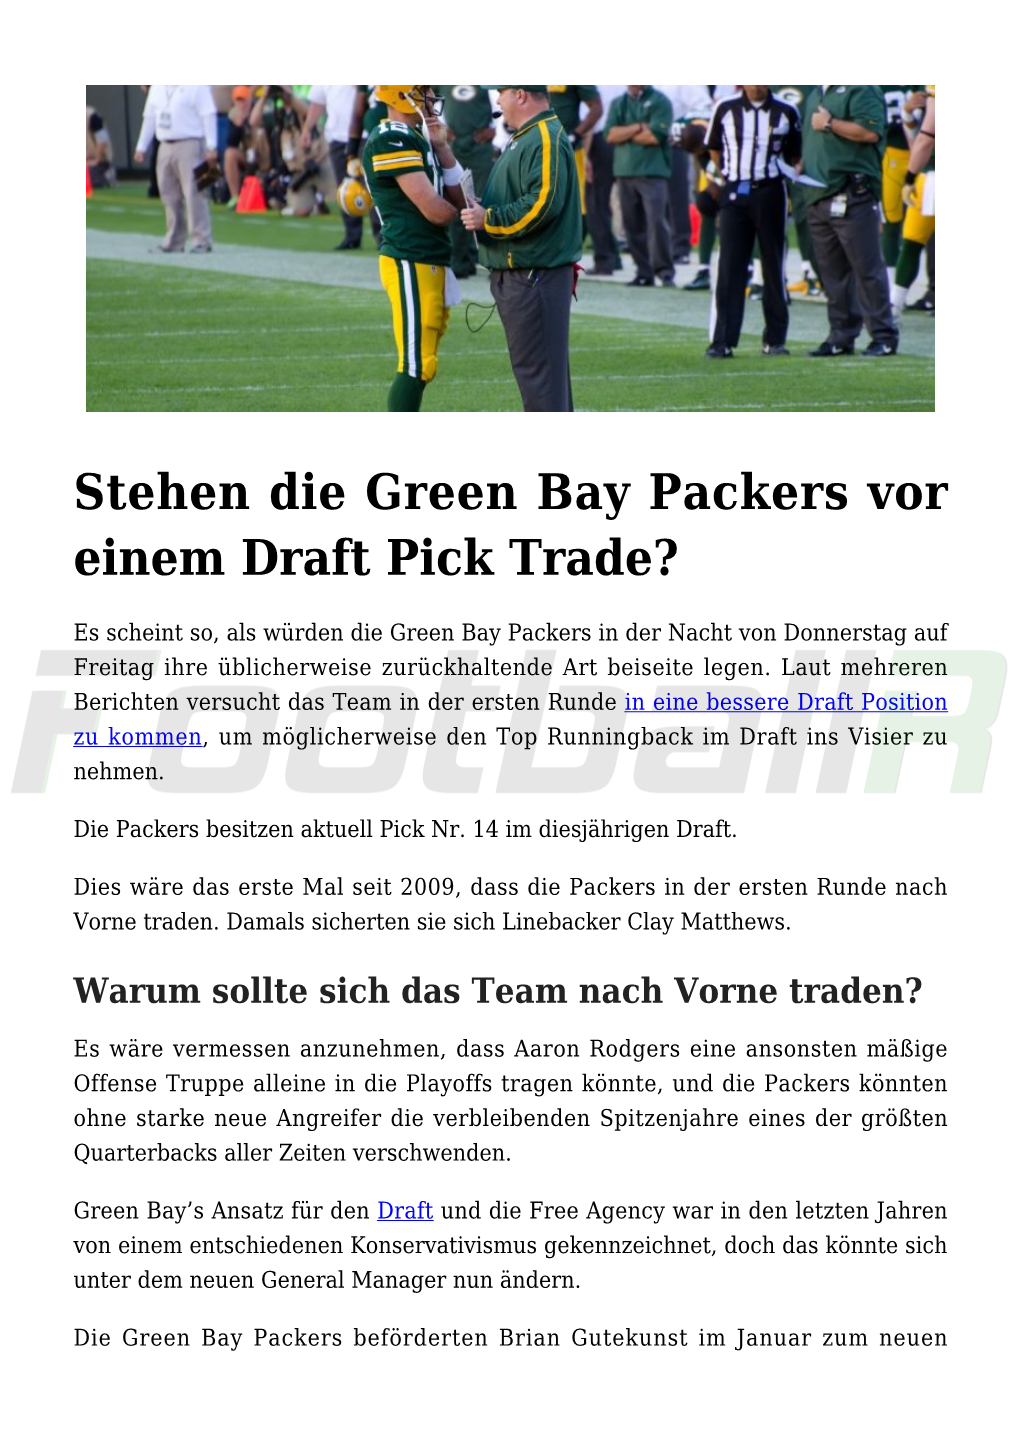 Stehen Die Green Bay Packers Vor Einem Draft Pick Trade?